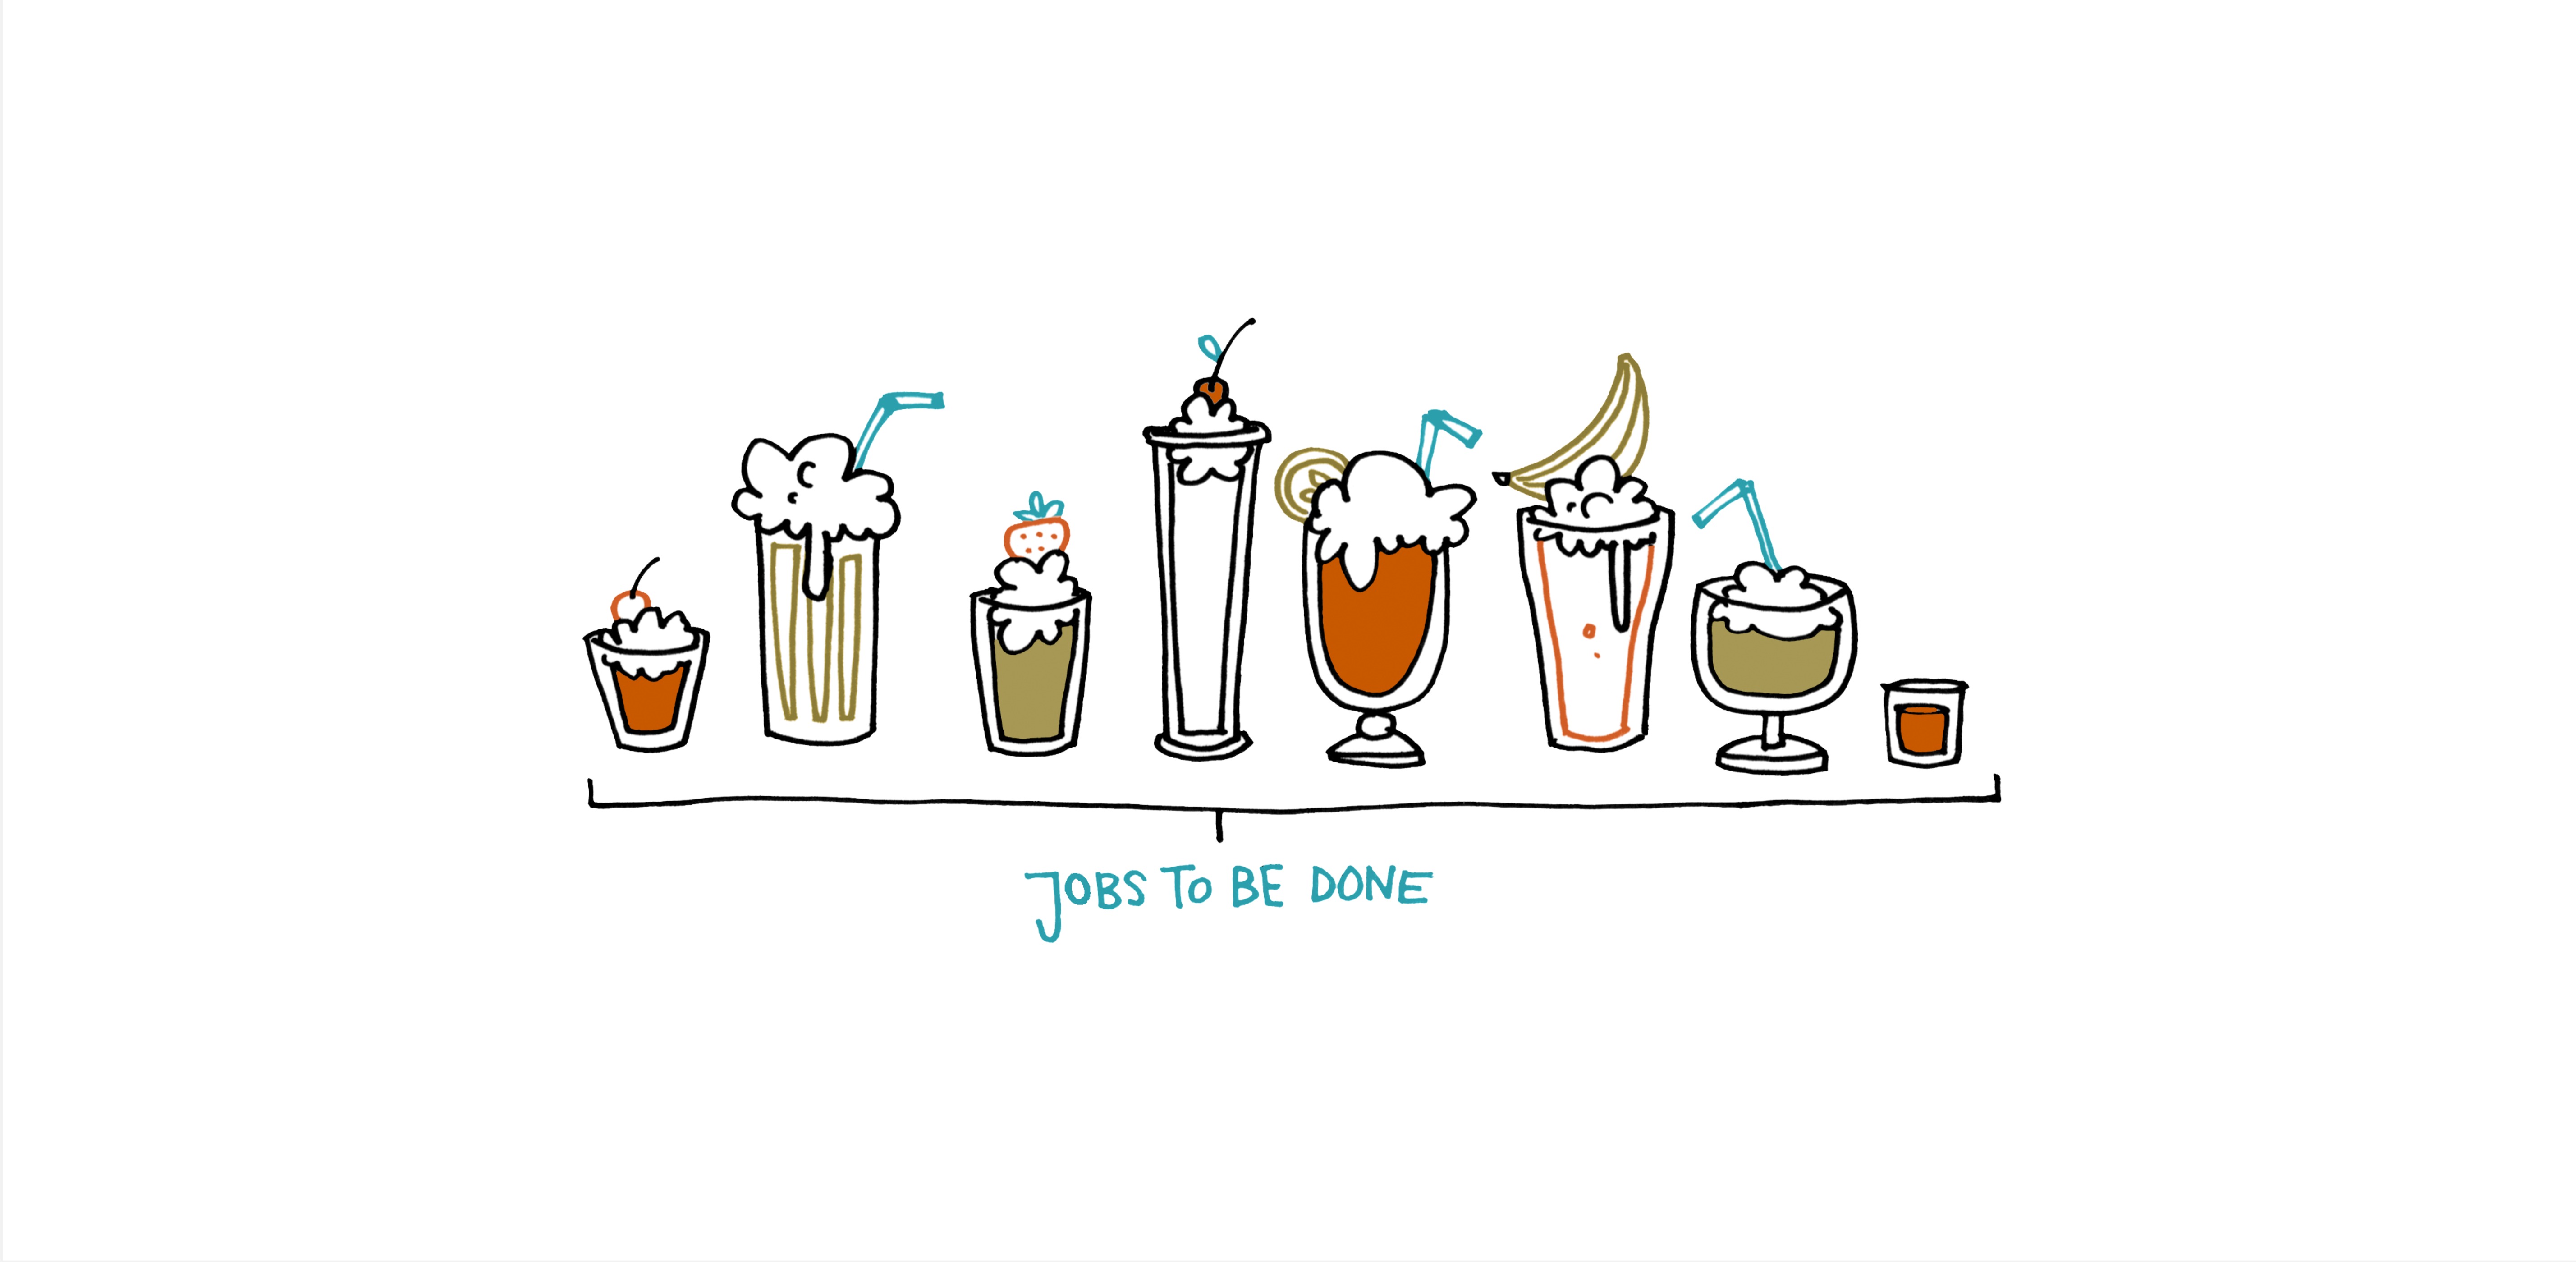 Bunte Strichzeichnung von 8 unterschiedlichen Milkshakes mit Sahne, Obst und Strohhalm und so. Darunter steht Jobs-to-be-done.